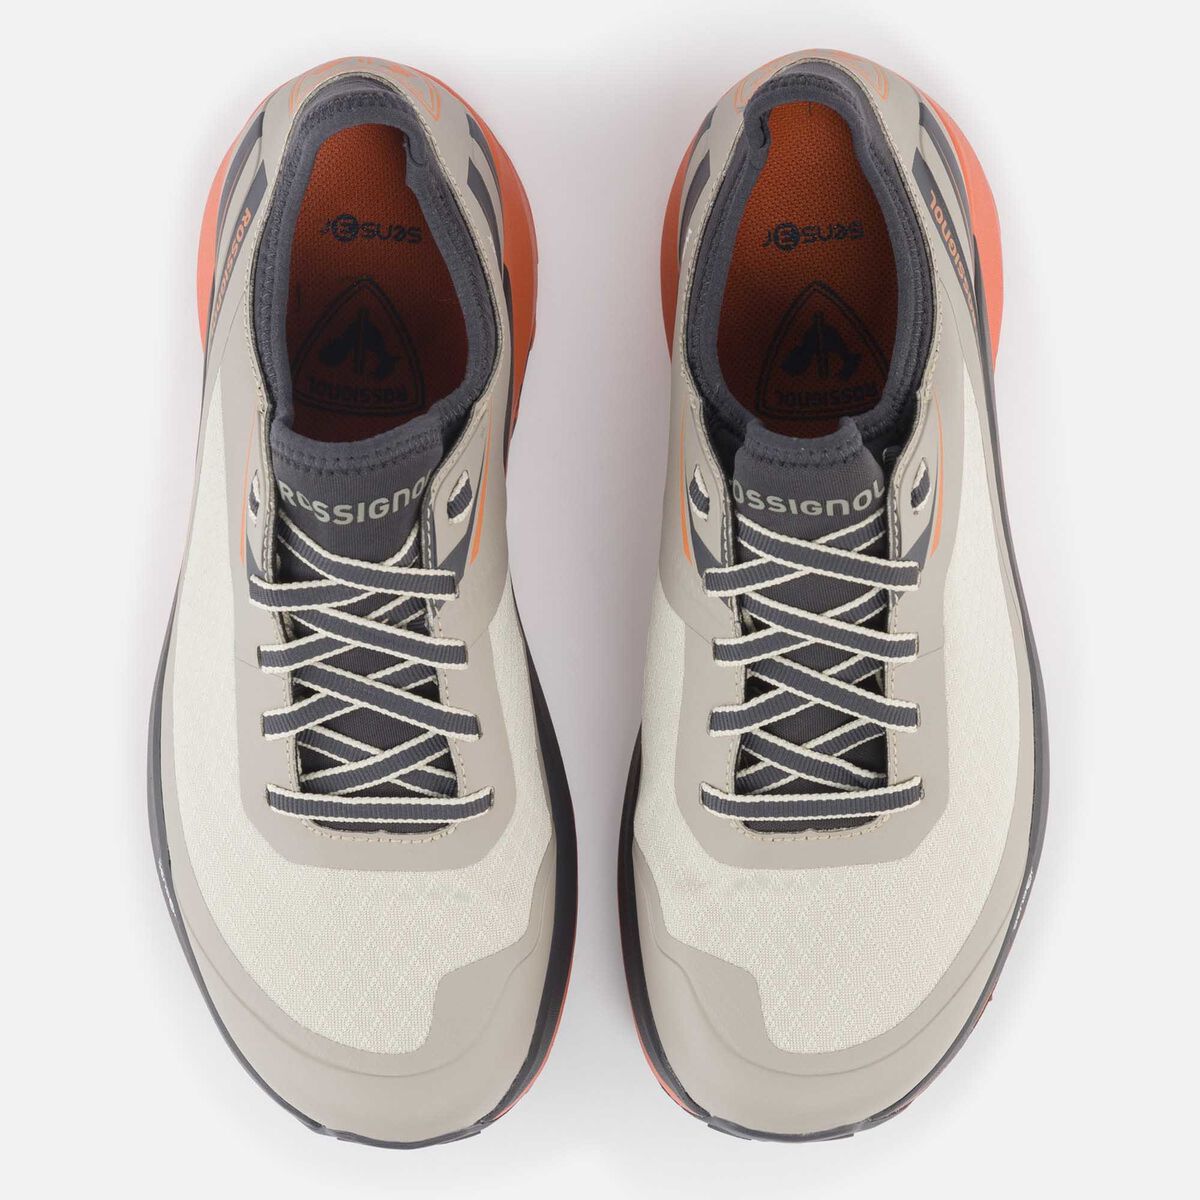 Rossignol Zapatillas impermeables Active outdoor de color caqui para mujer grey